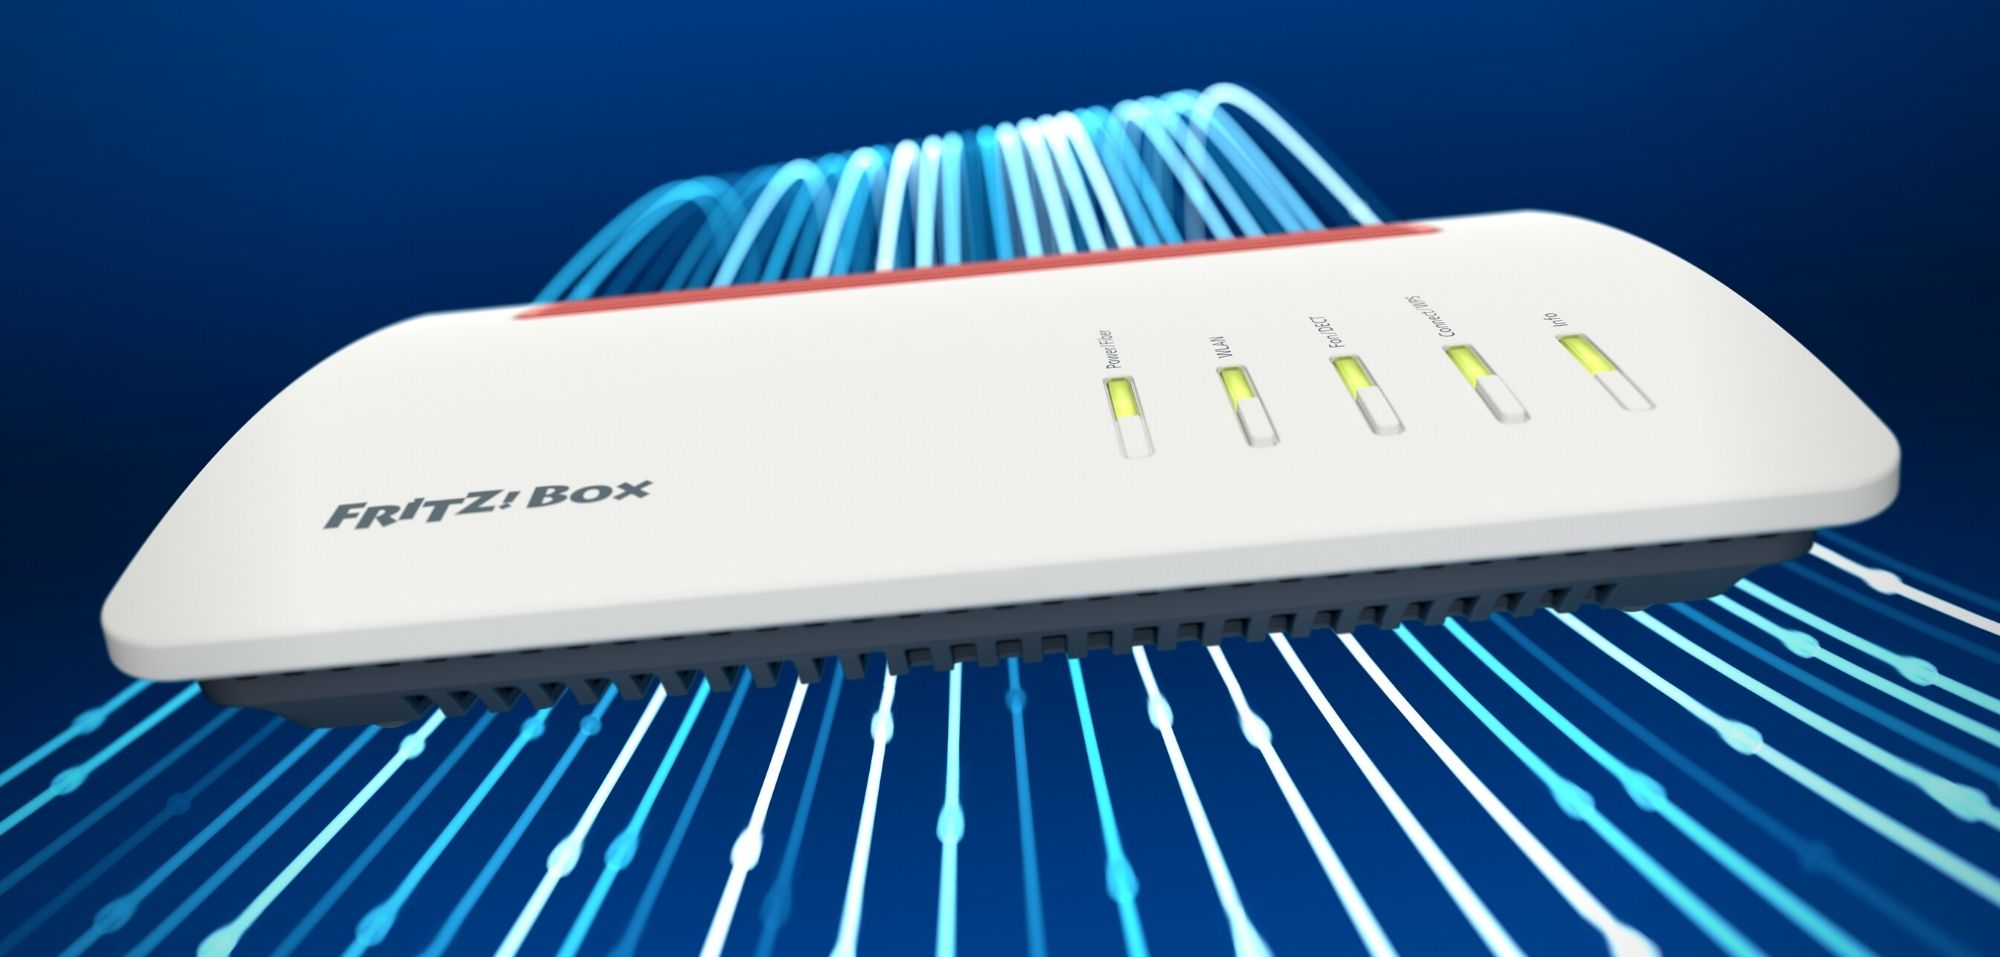 FritzBox Upgrade: 3 app fanno funzionare il tuo router alla massima velocità